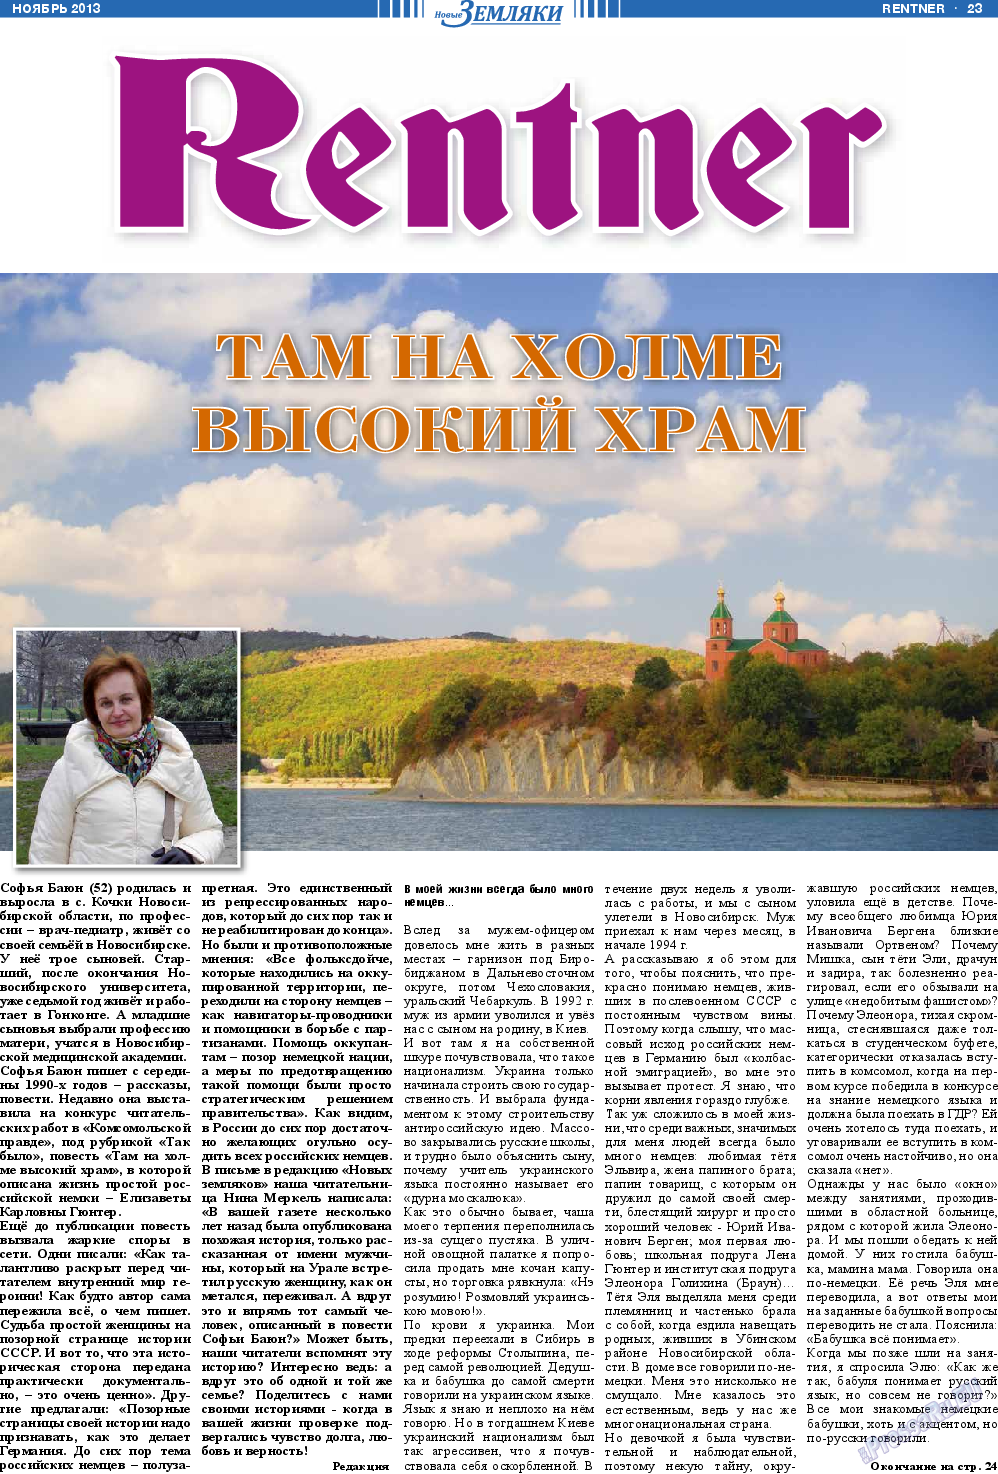 Новые Земляки, газета. 2013 №11 стр.23